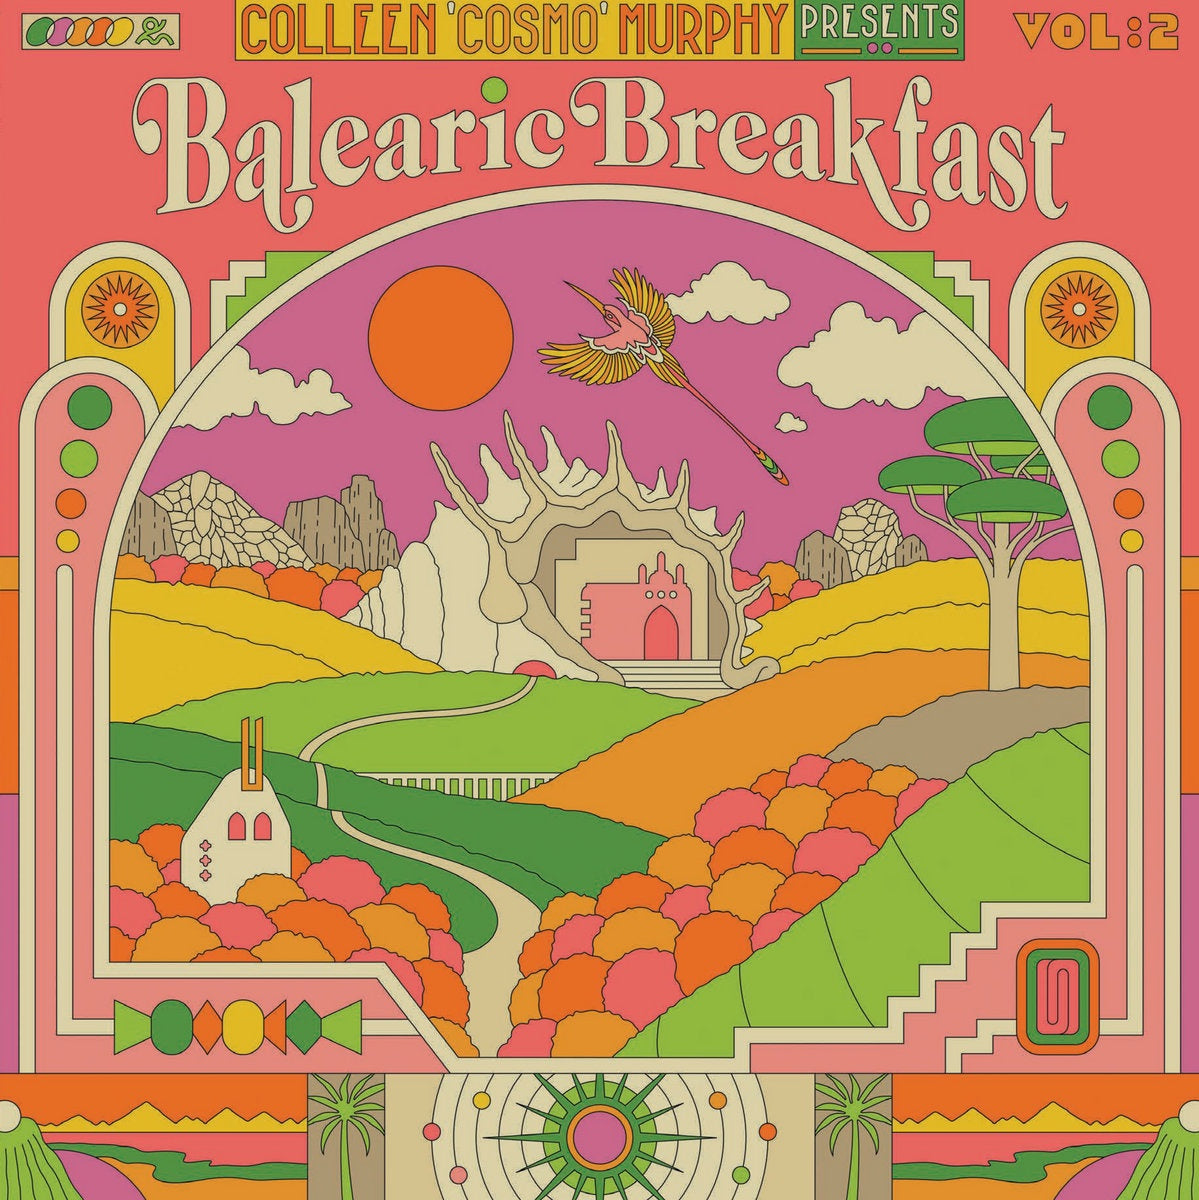 Colleen 'Cosmo' Murphy – Balearic Breakfast Vol:2